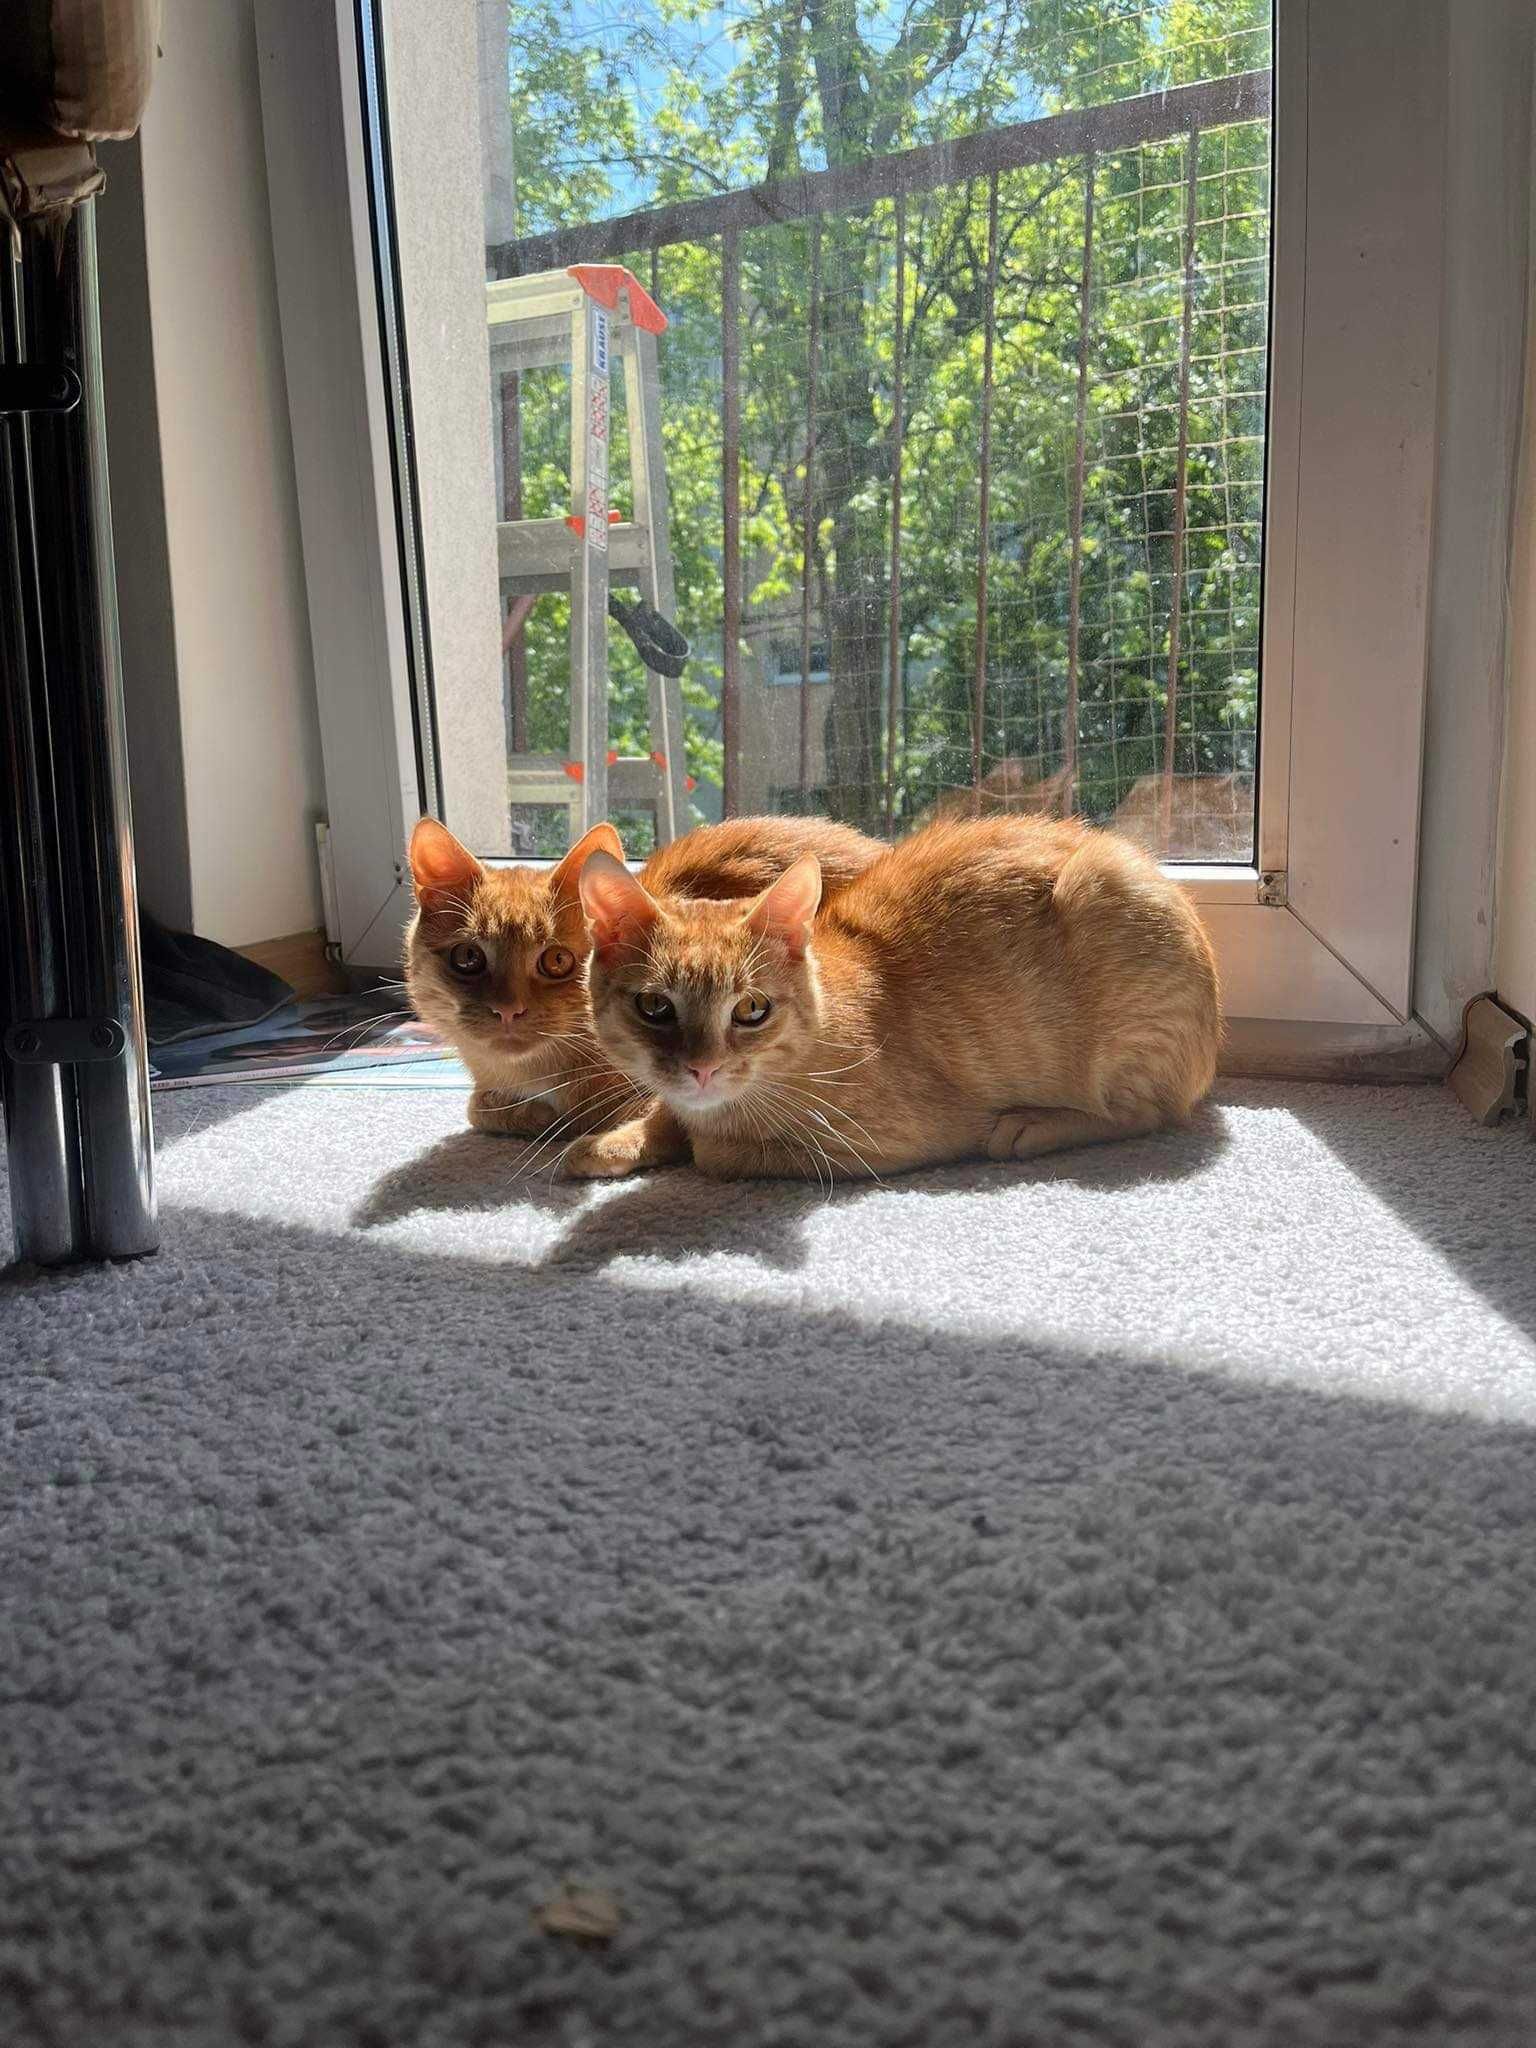 Poszukiwany dom dla dwóch wspaniałych rudych kotków (rodzeństwo)